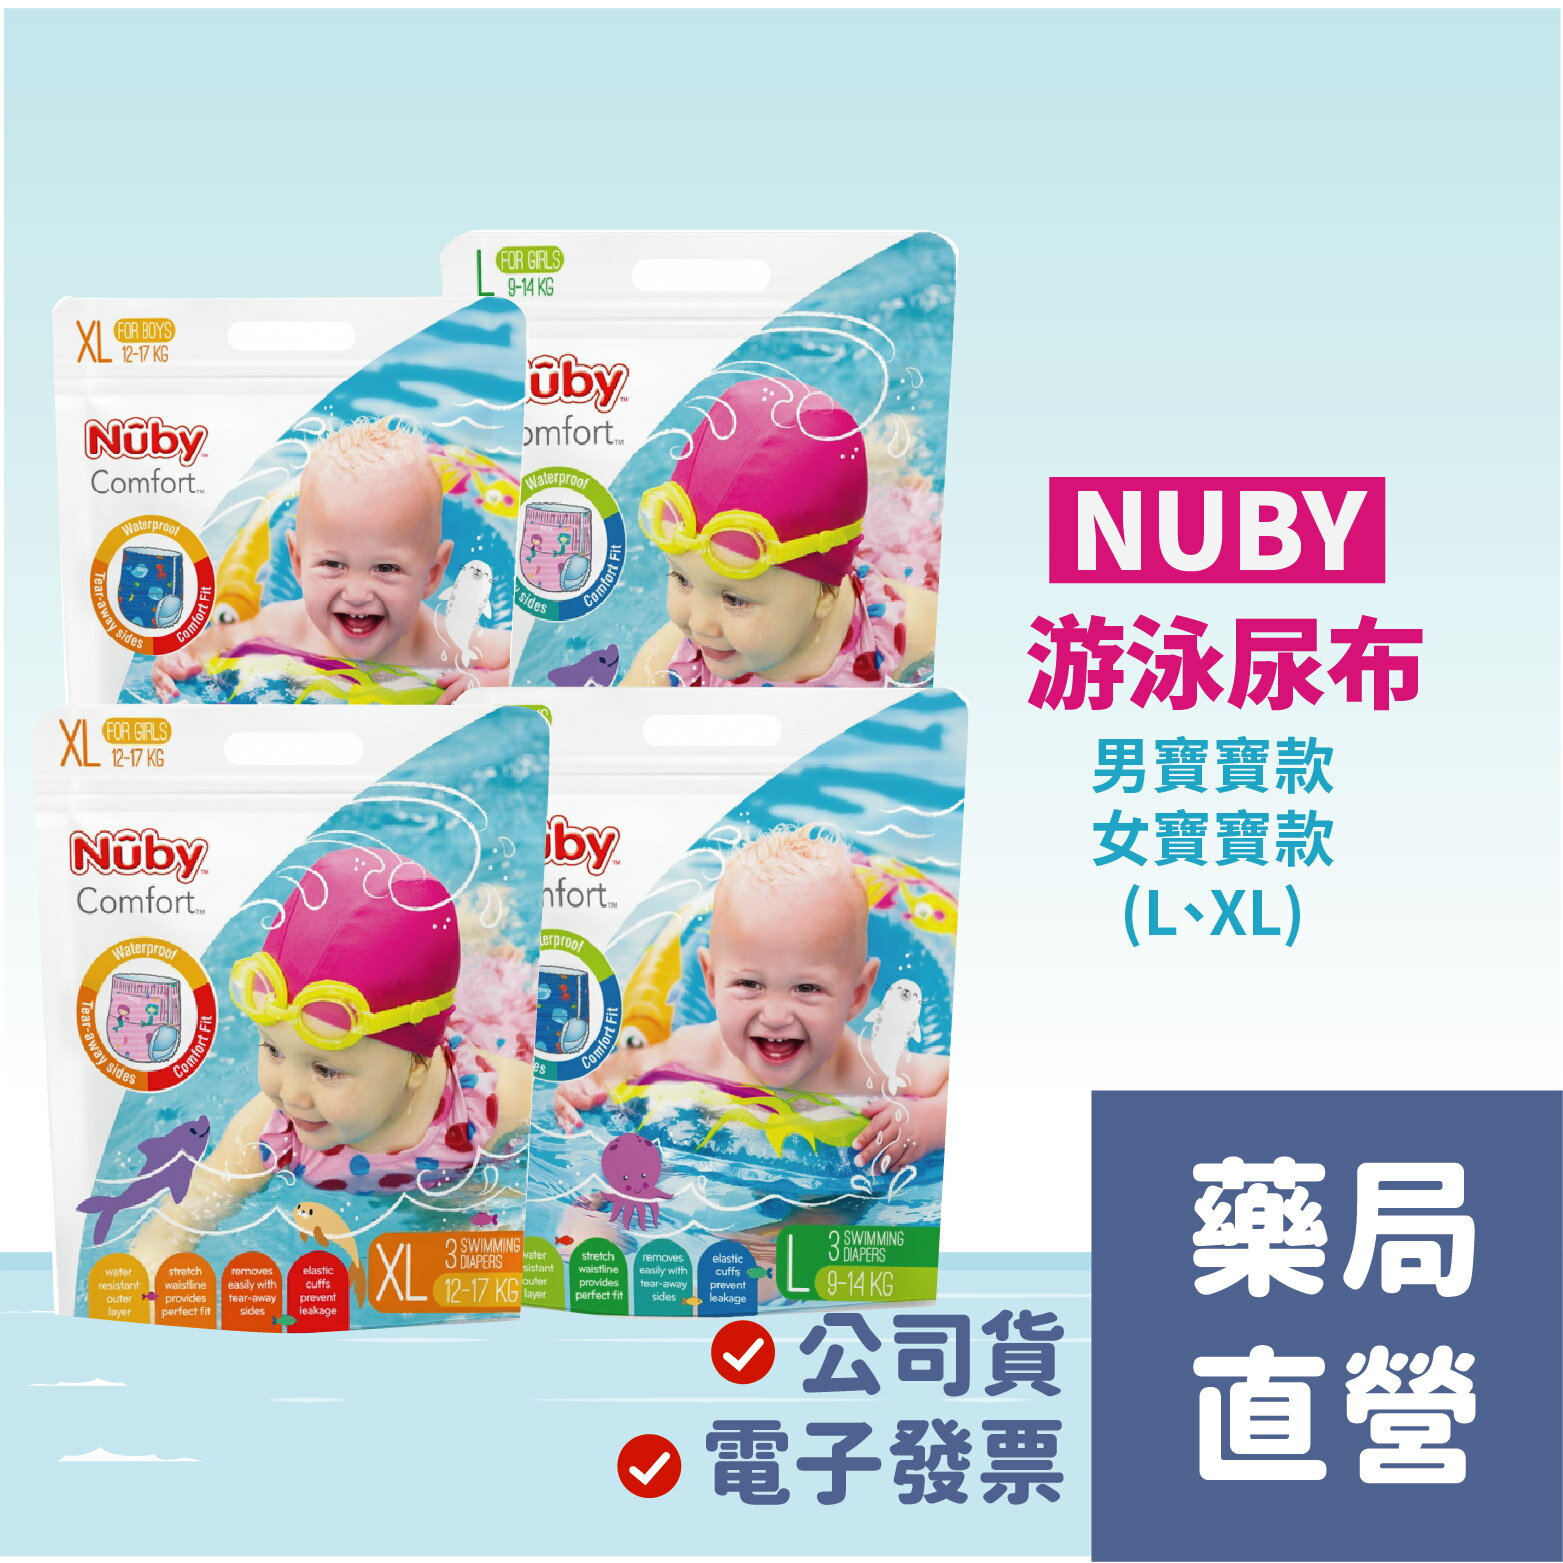 [禾坊藥局] Nuby游泳尿布( L XL) 玩水 游泳戲水褲 男寶寶 女寶寶 兒童泳褲 寶寶泳褲